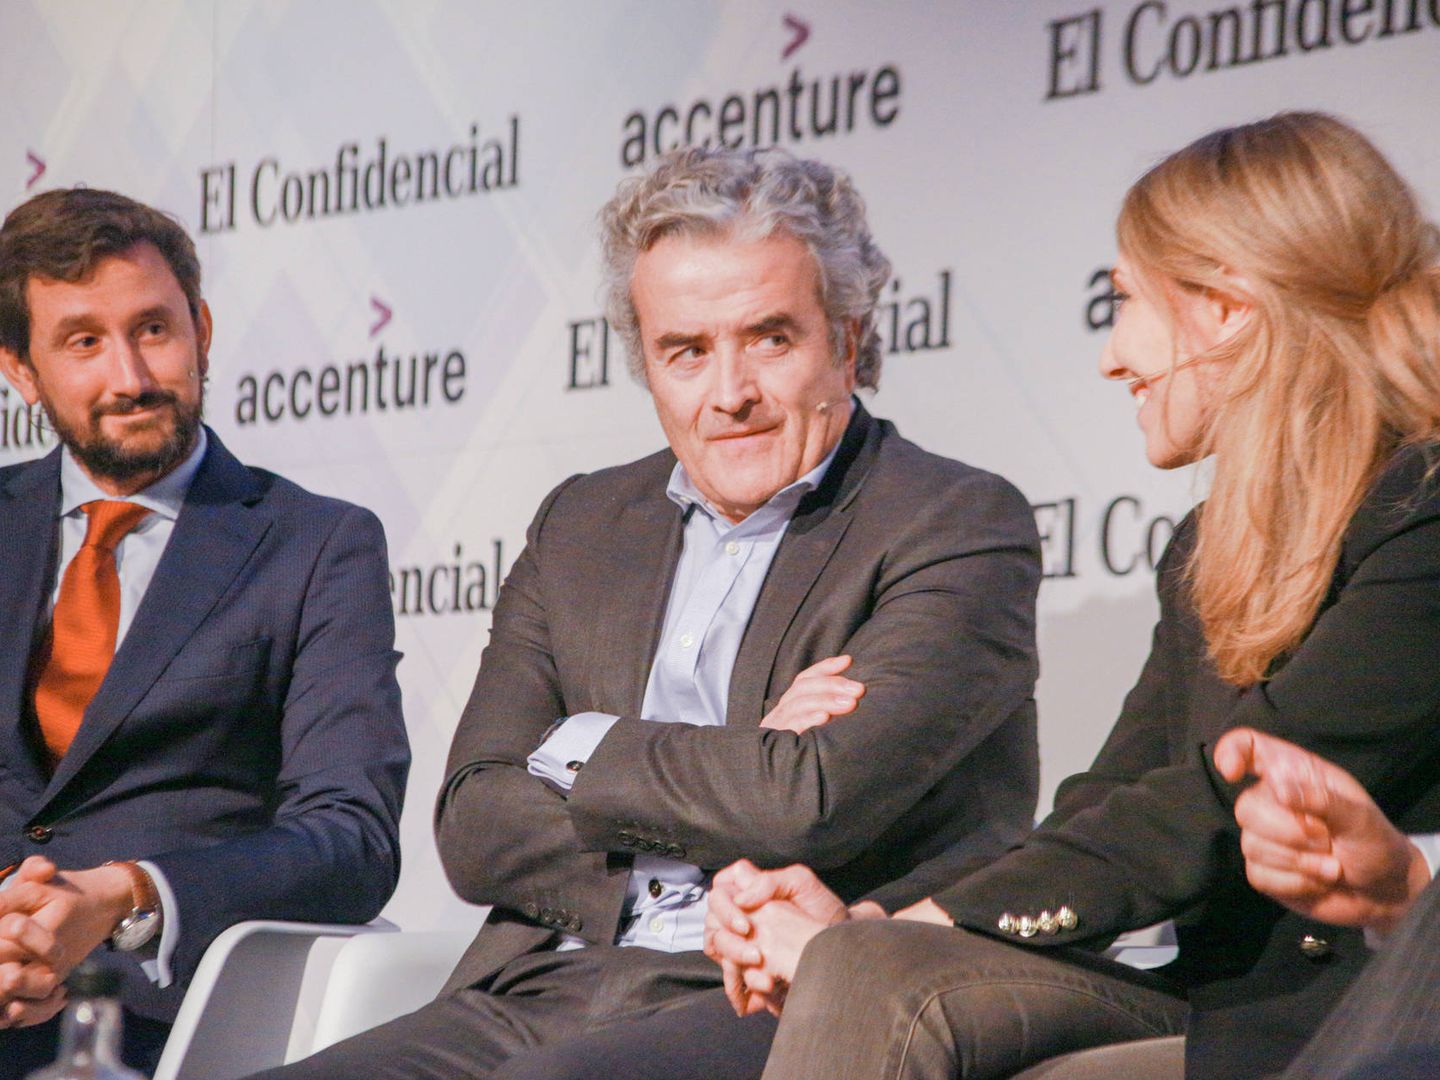 De izquierda a derecha: Gabriel Perdiguero (Iberia), Iñaki Ereño (Sanitas) e Irene Cano (Facebook).